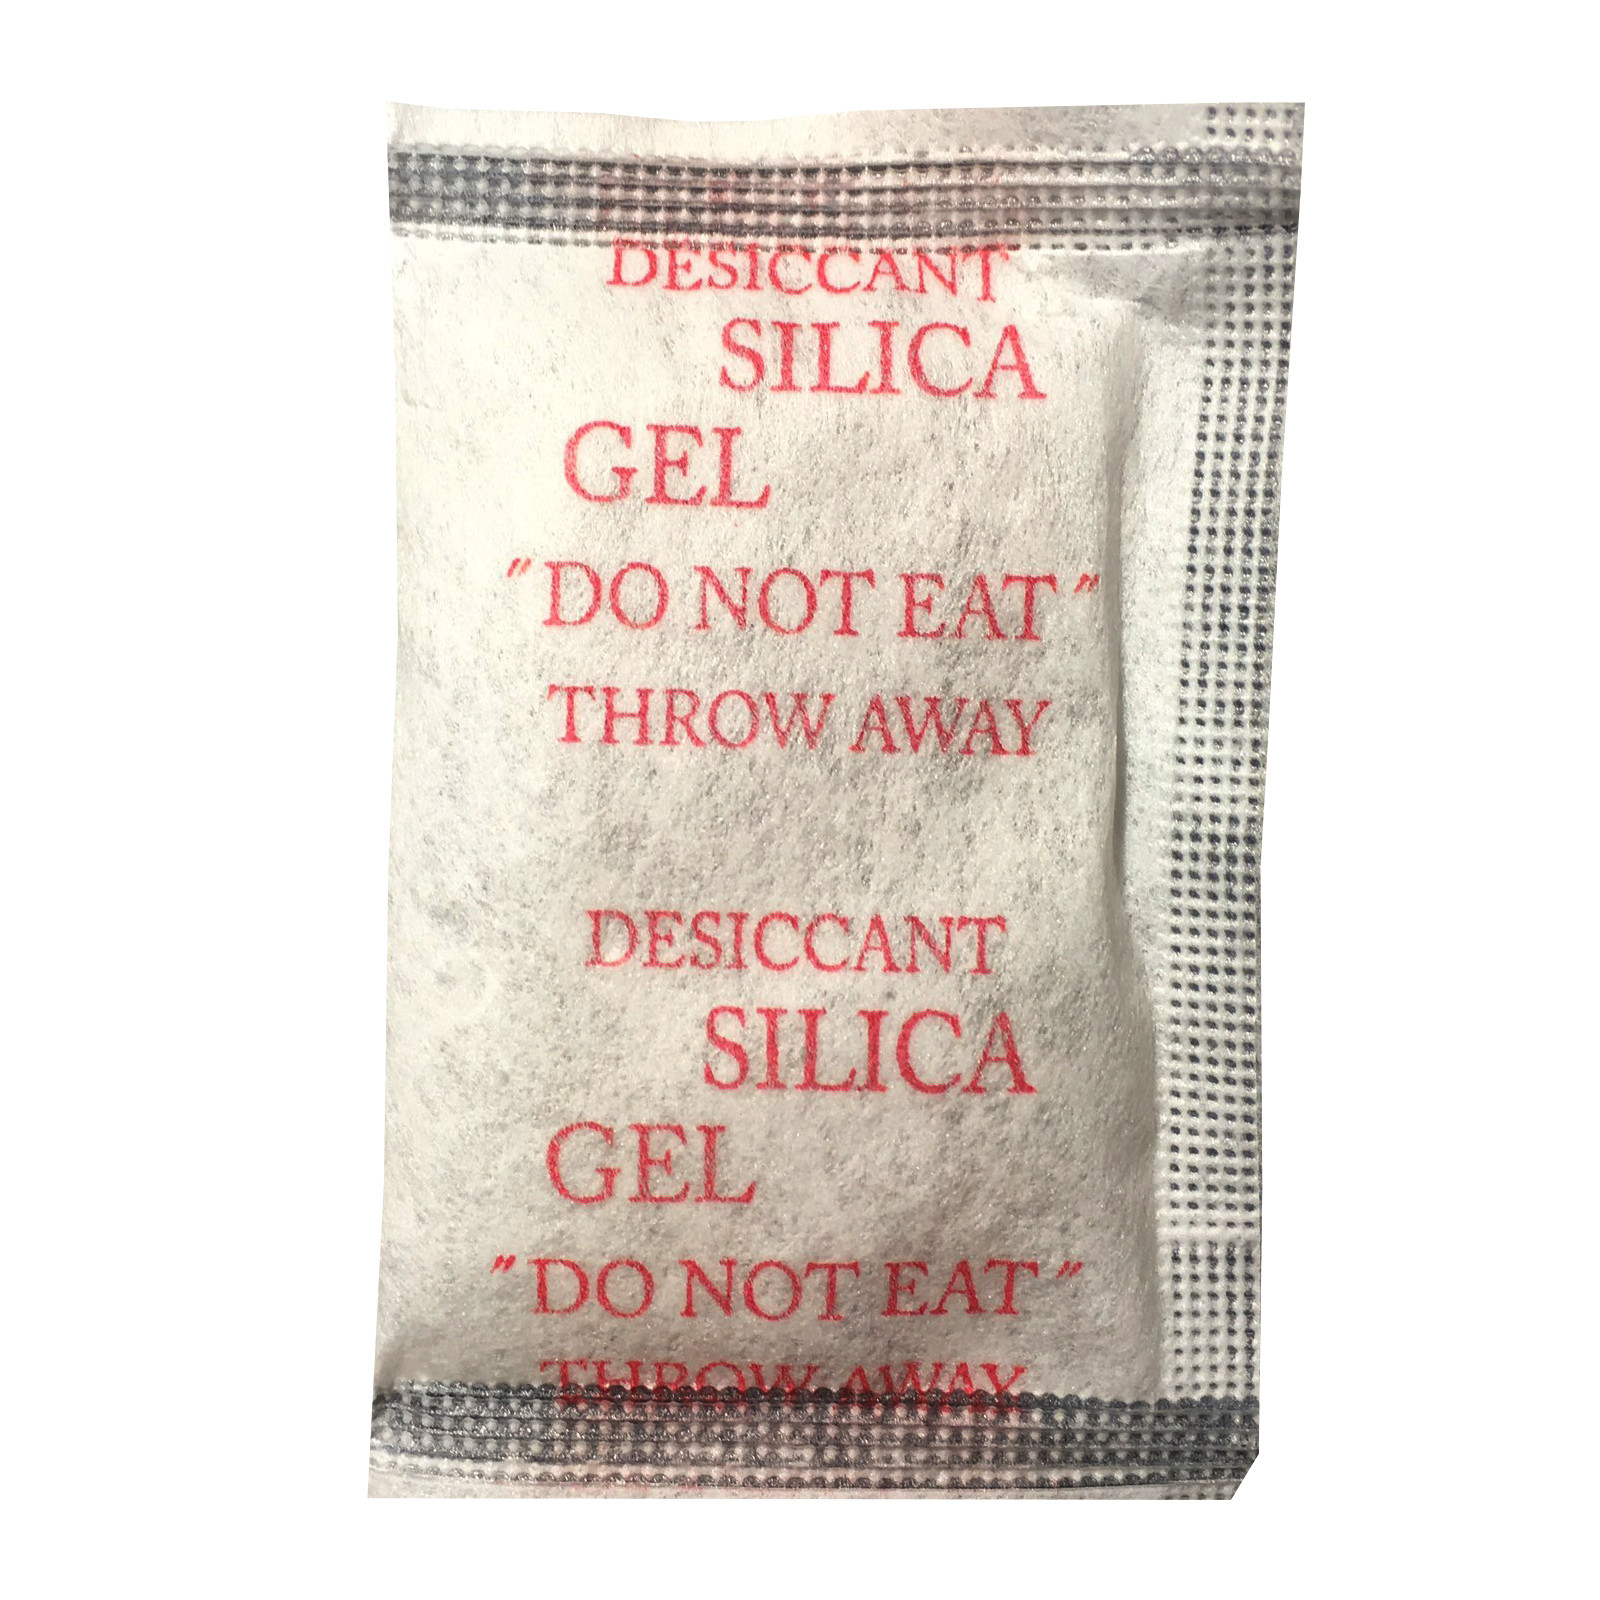 Túi hút ẩm Secco silica gel 5gr - 1kg (200 túi) - Chính hãng - Vải trắng - Chữ đỏ